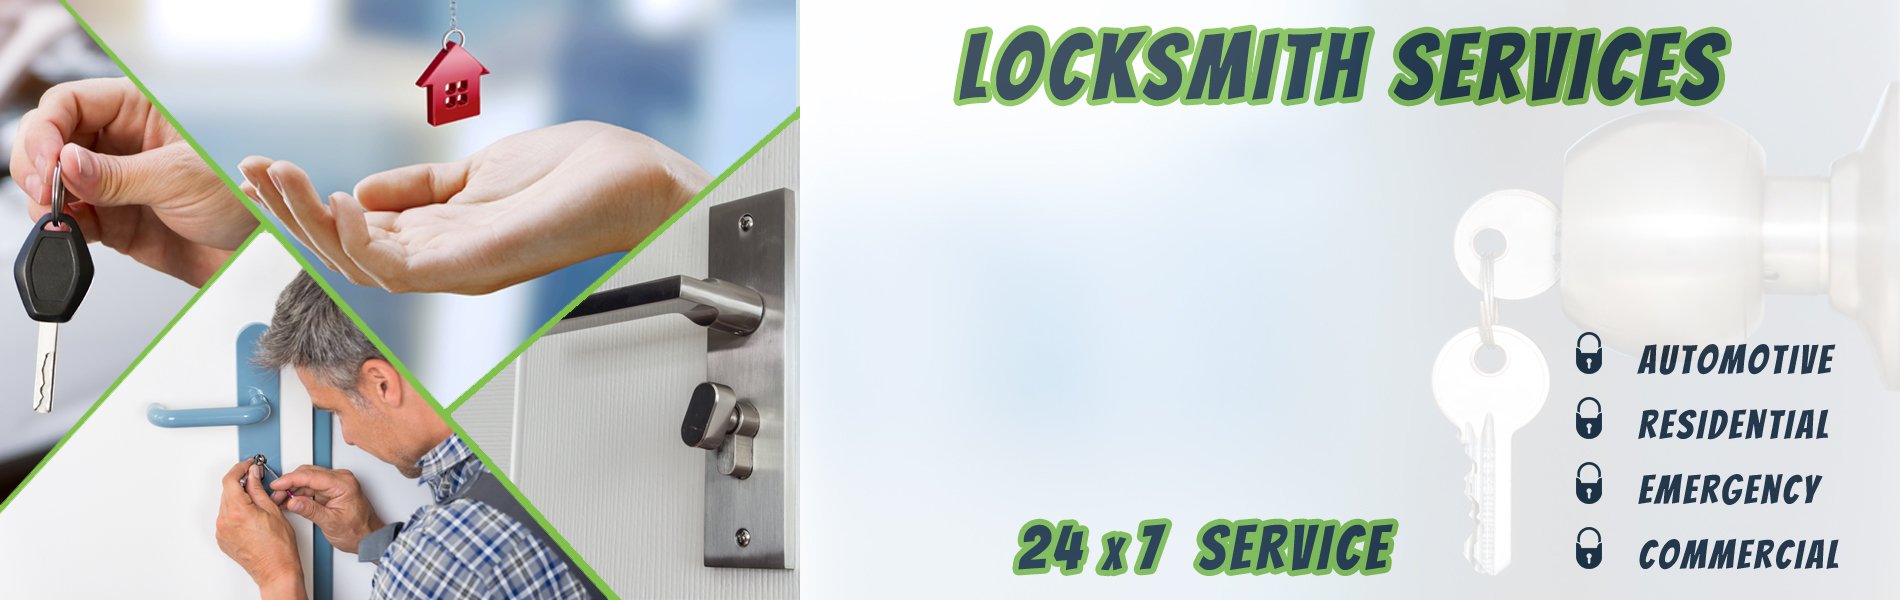 Super Locksmith Services Milltown, NJ 732-419-7566